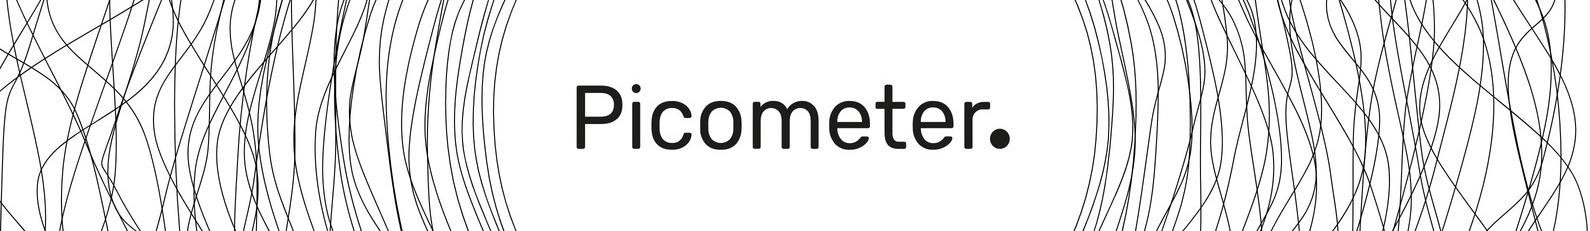 Pm. Picometer's profile banner